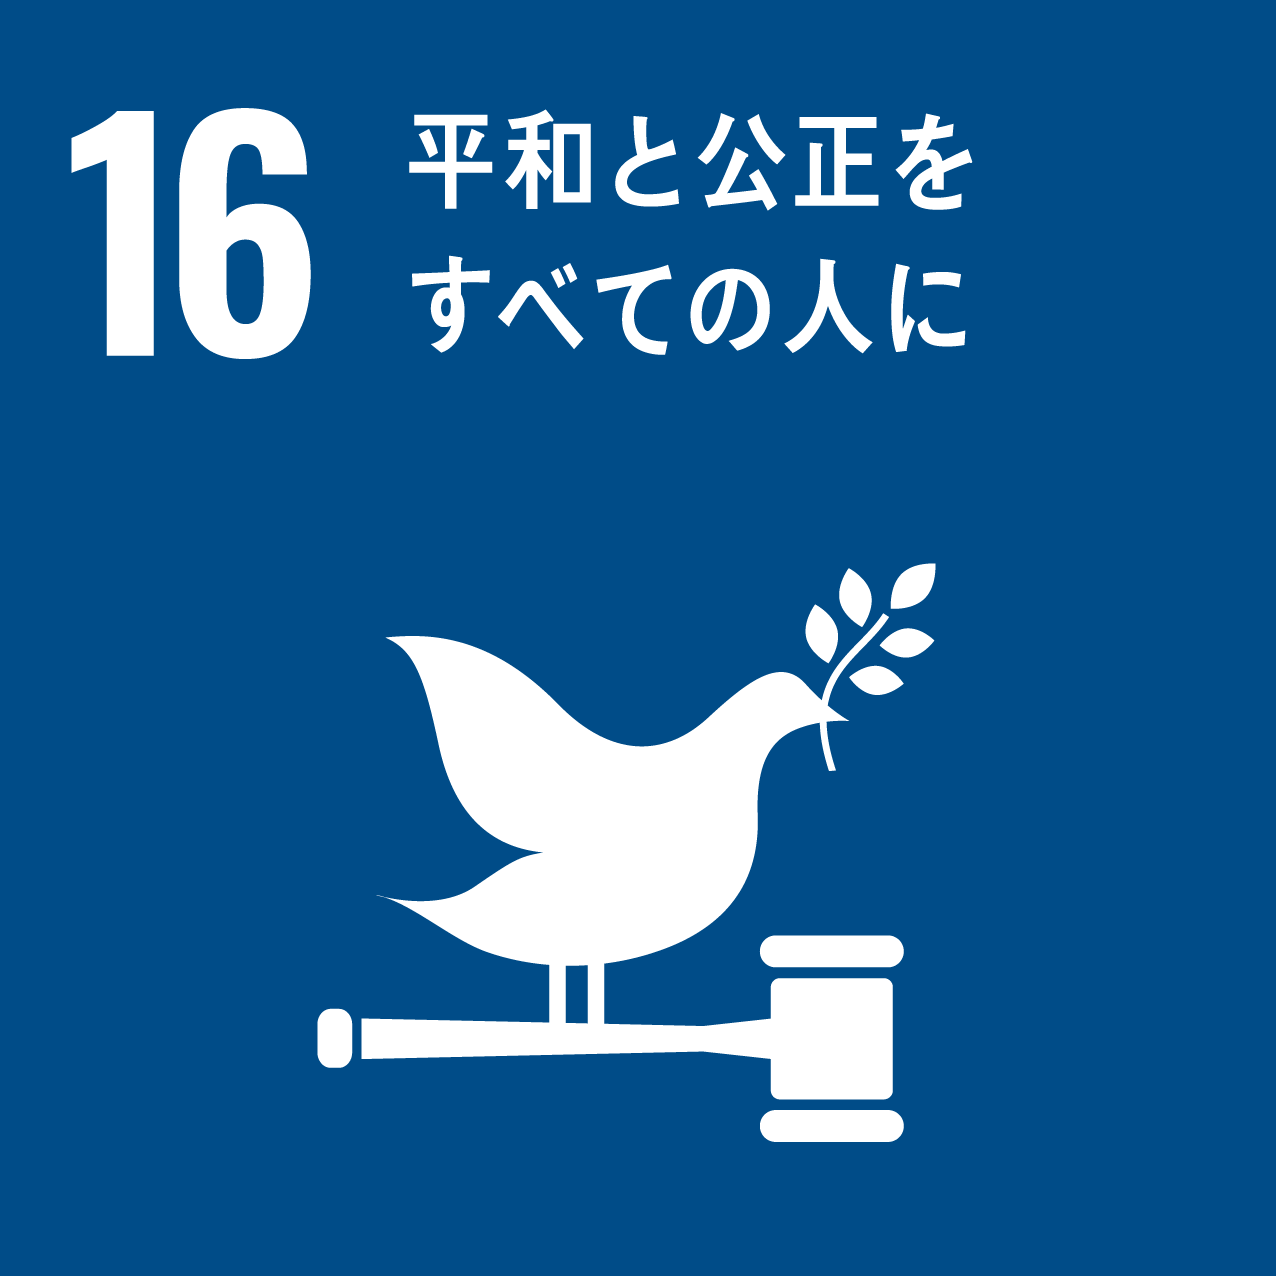 国際目標16.平和と公正をすべての人に